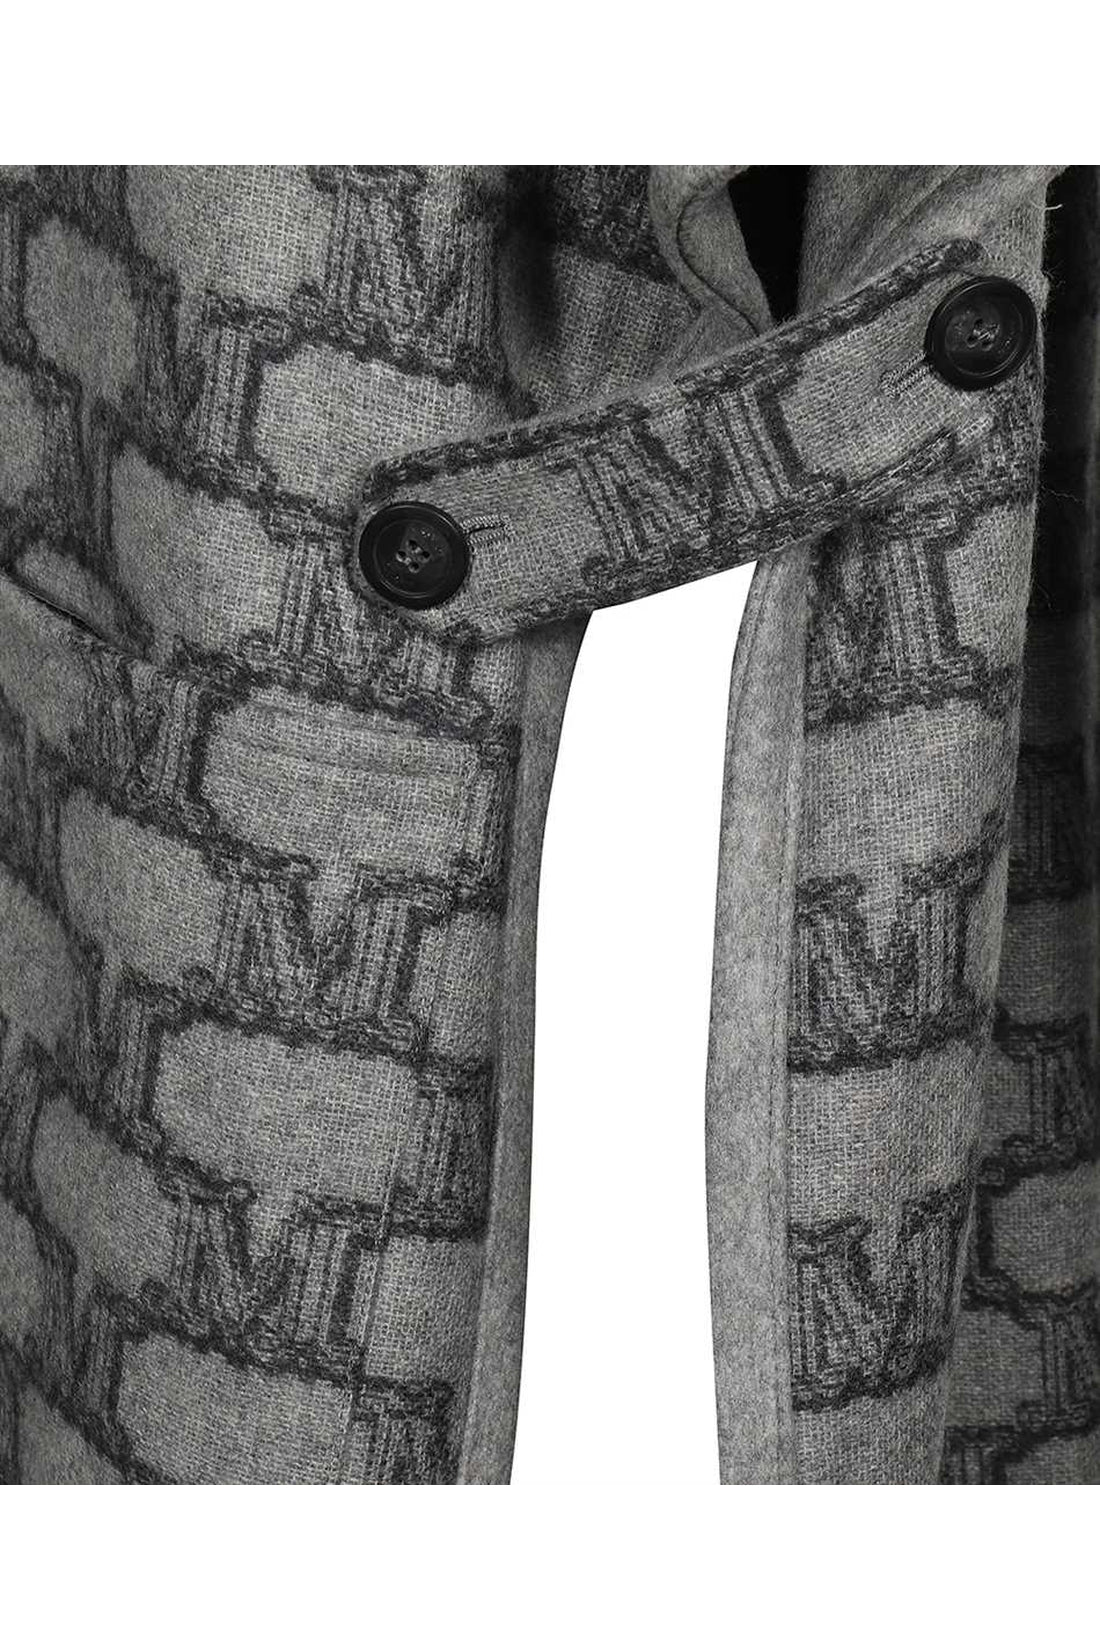 Max Mara-OUTLET-SALE-Zenica reversible knit cape coat-ARCHIVIST